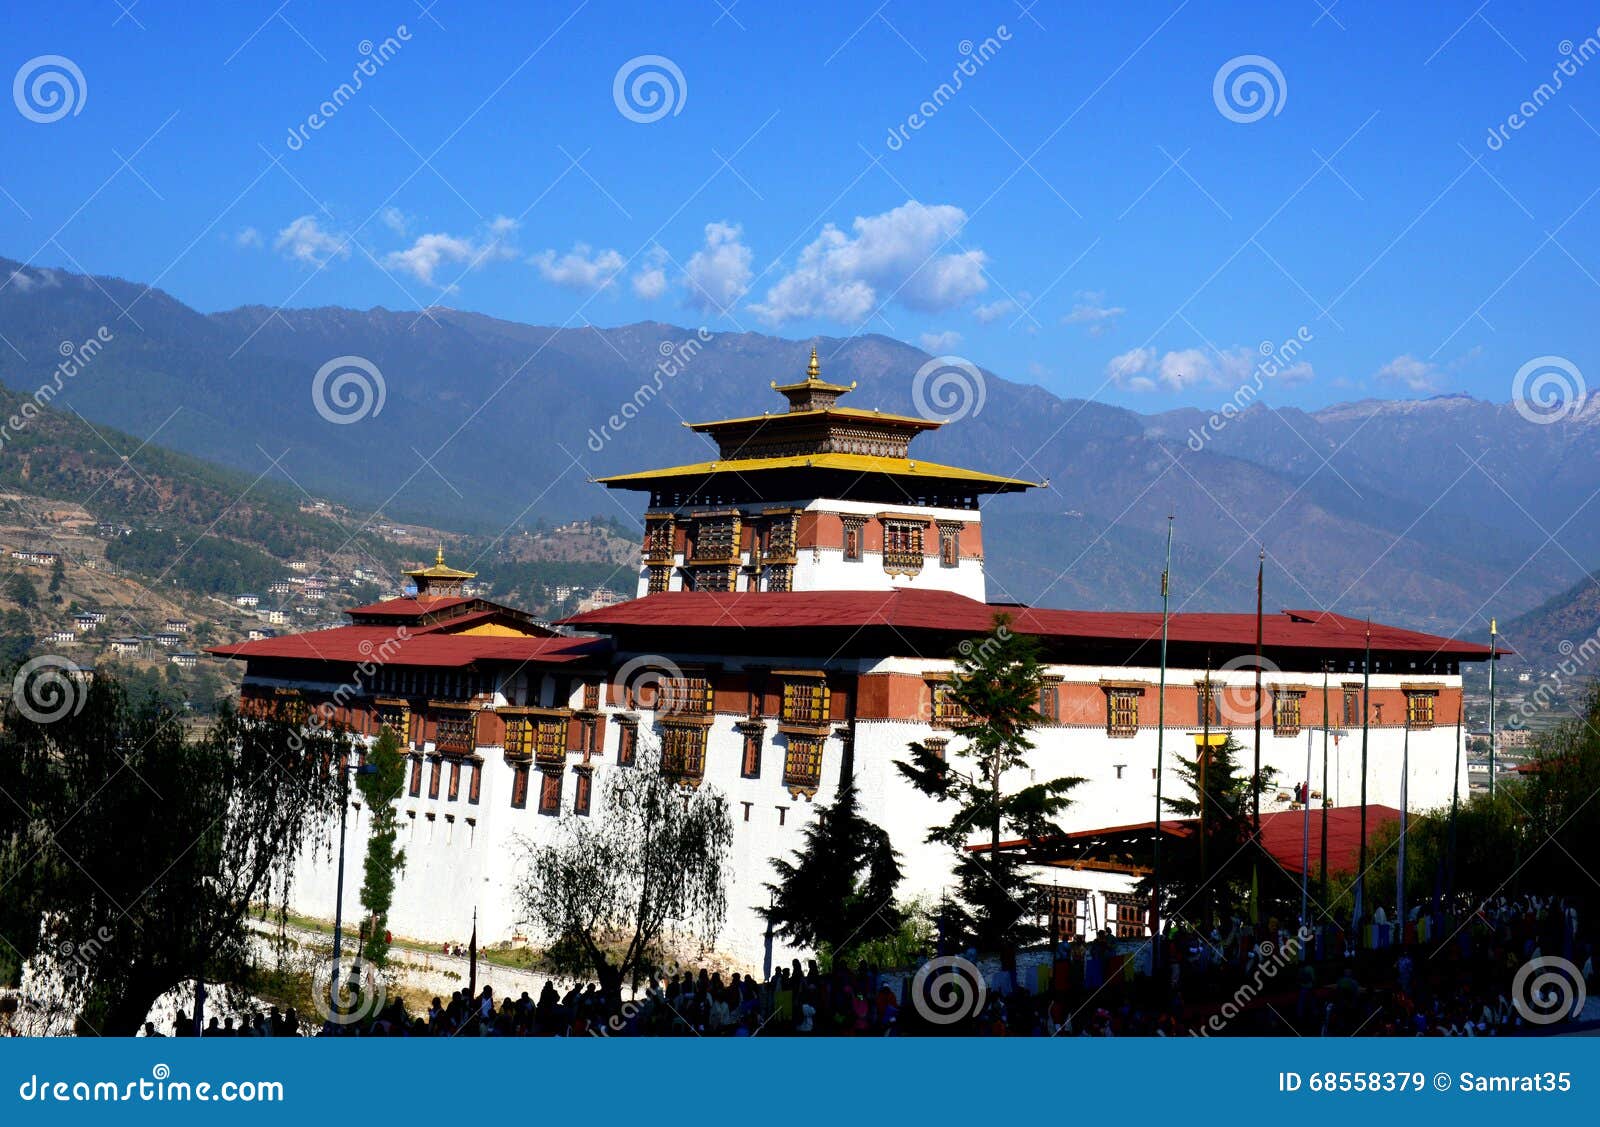 超过 2 张关于“发现王国”和“不丹”的免费图片 - Pixabay